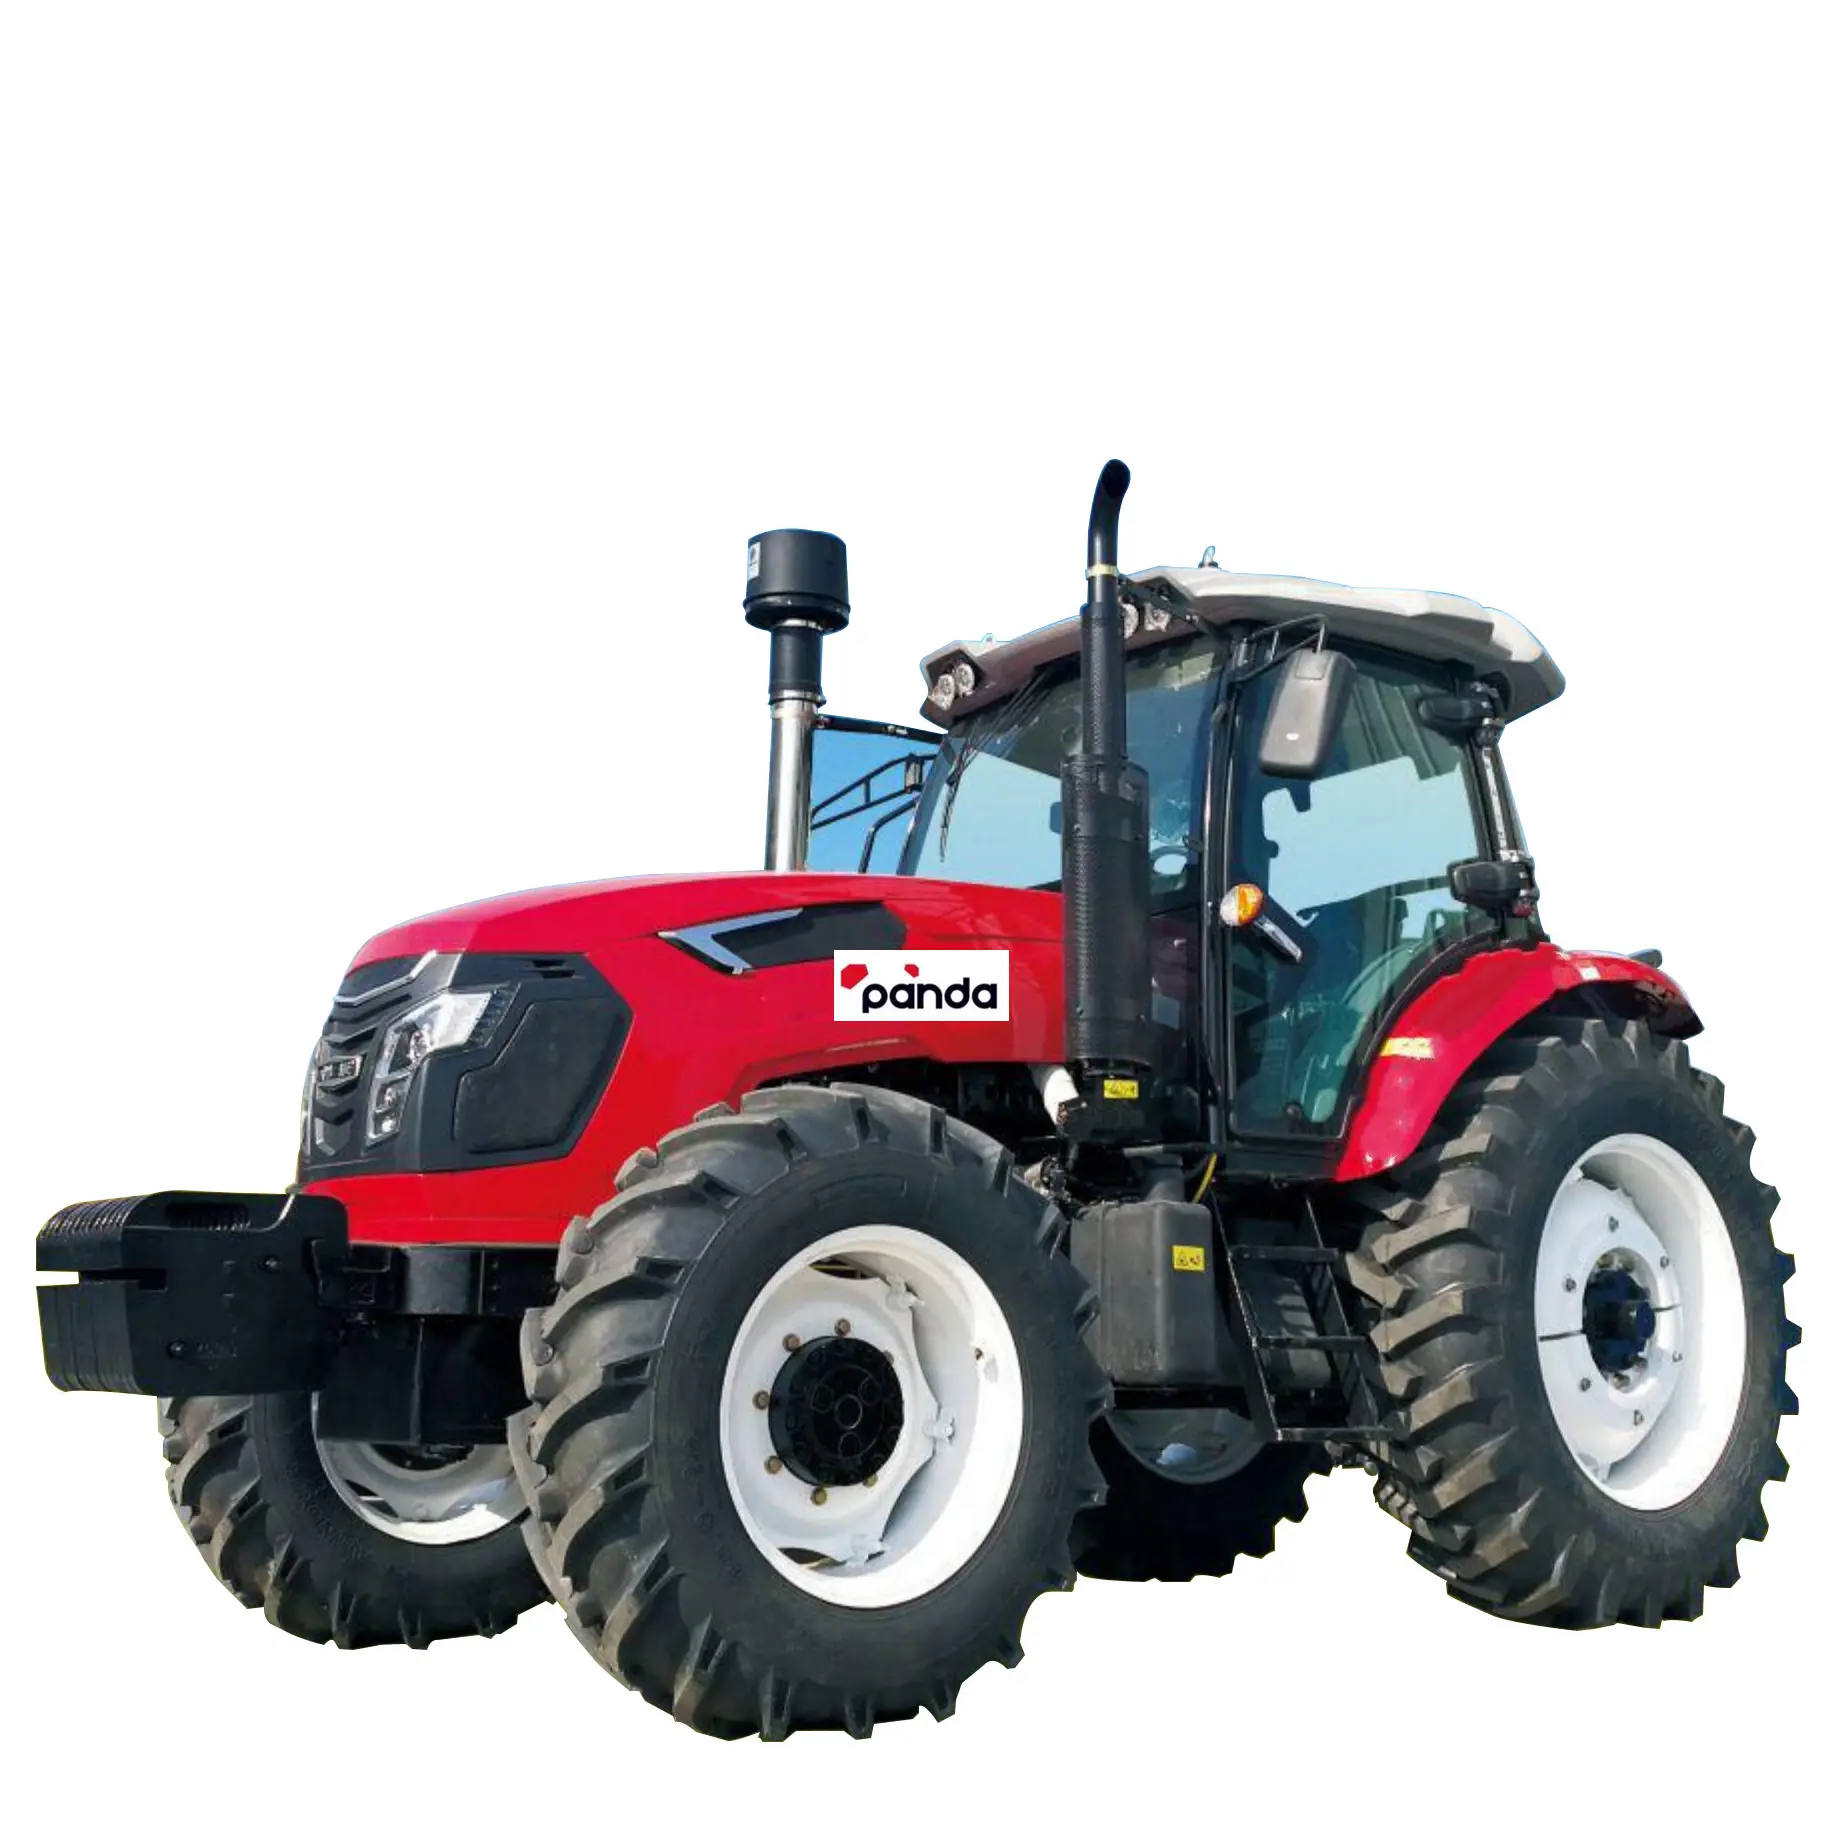 4 wheel wd 50hp 45hp best selling in South America garden delar wholesale farm mini tractor 4wd